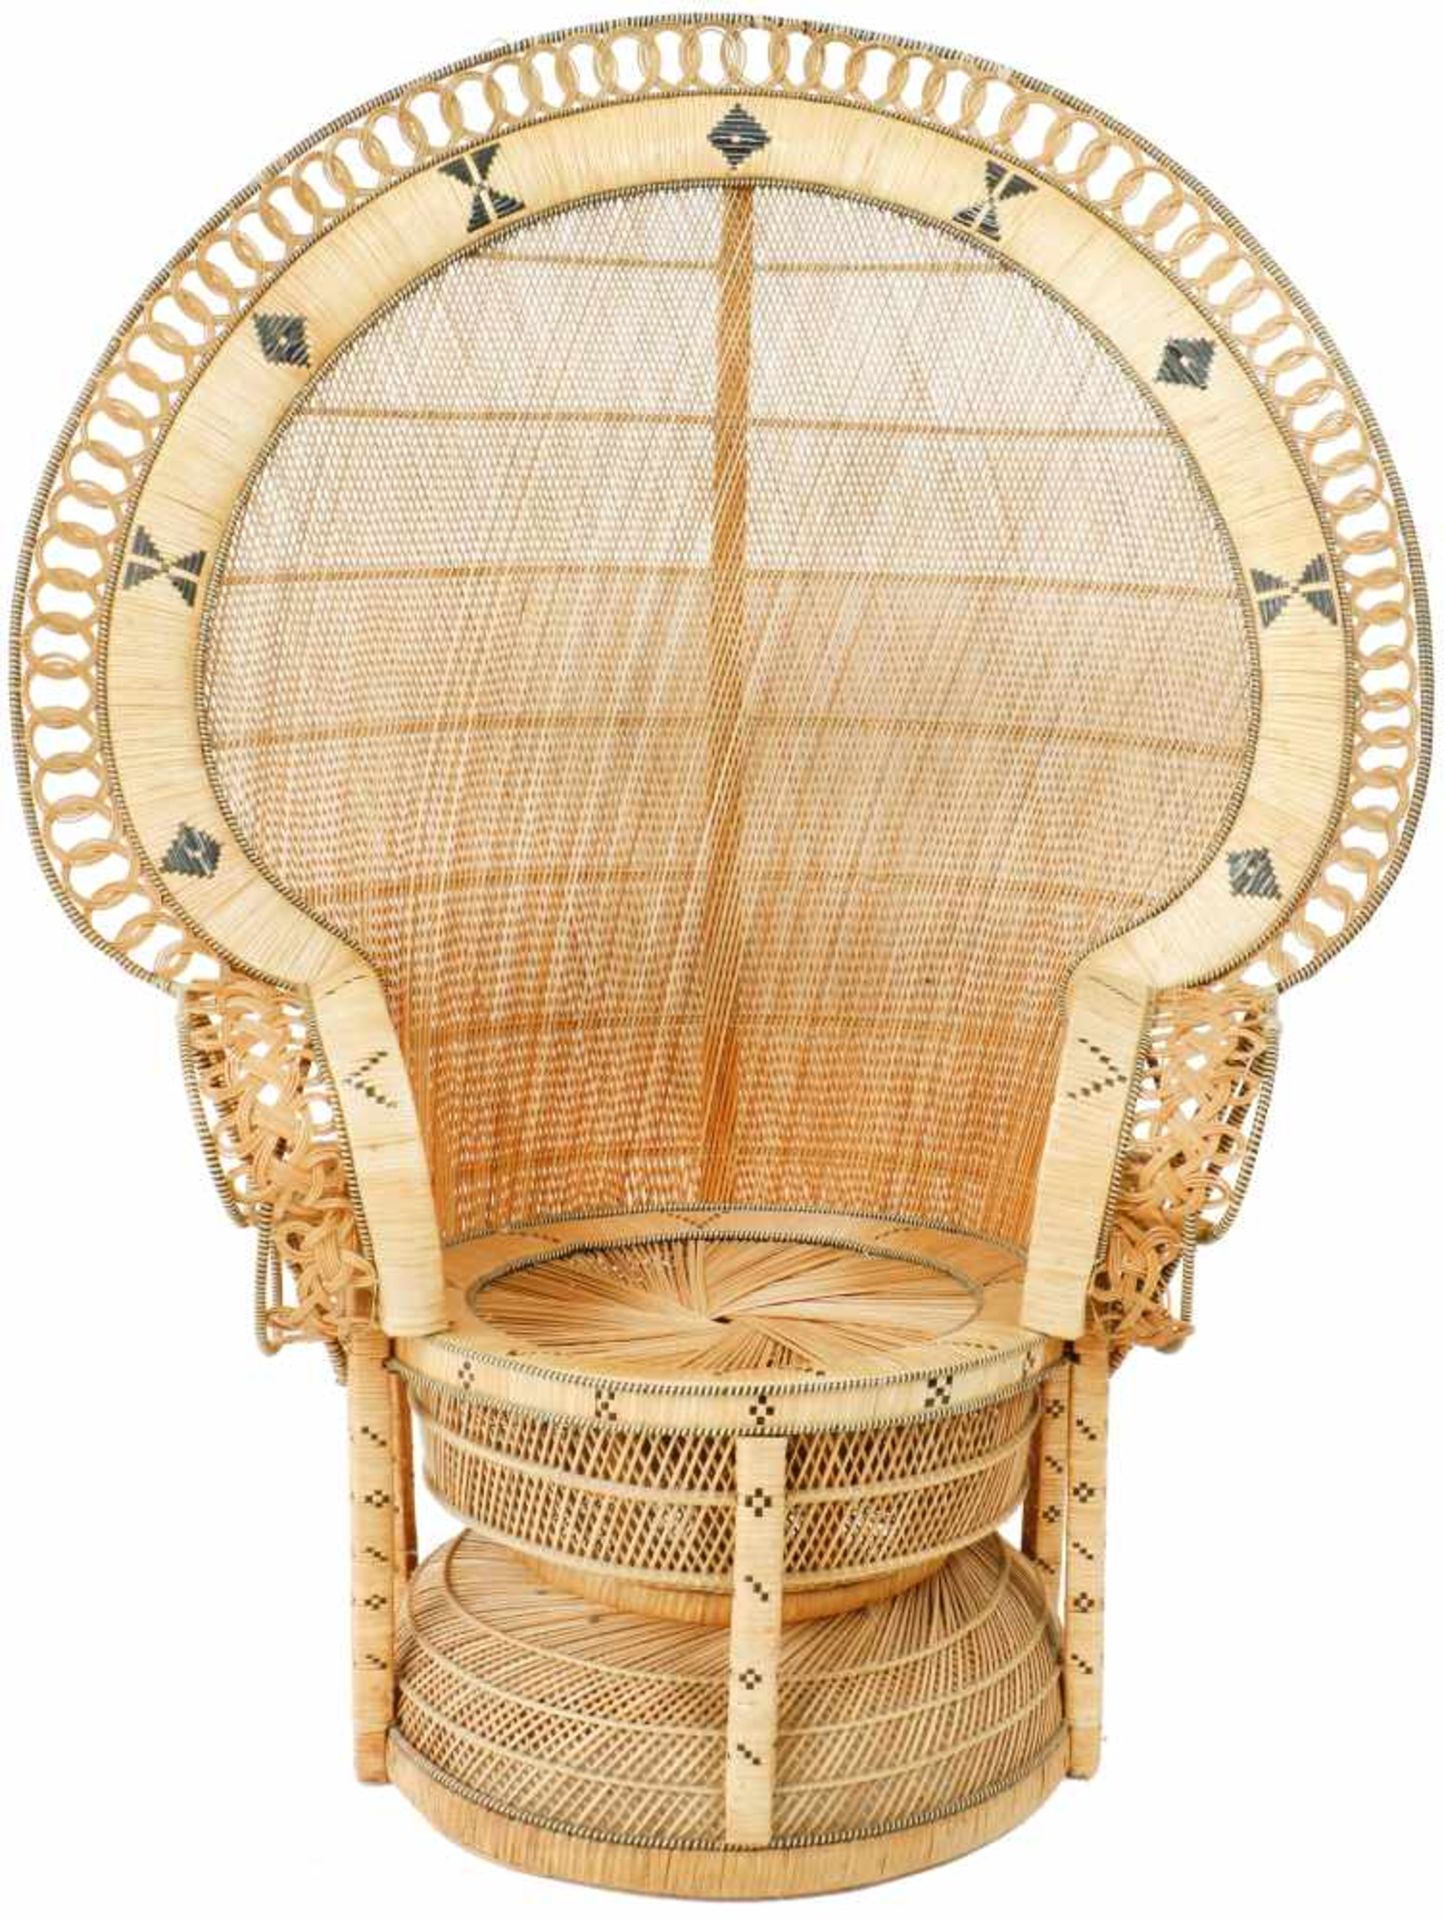 Een handgevlochten pauwenstoel. Indonesië.Afm. 166 x 50 x 40 cm.A hand-woven peacock chair.